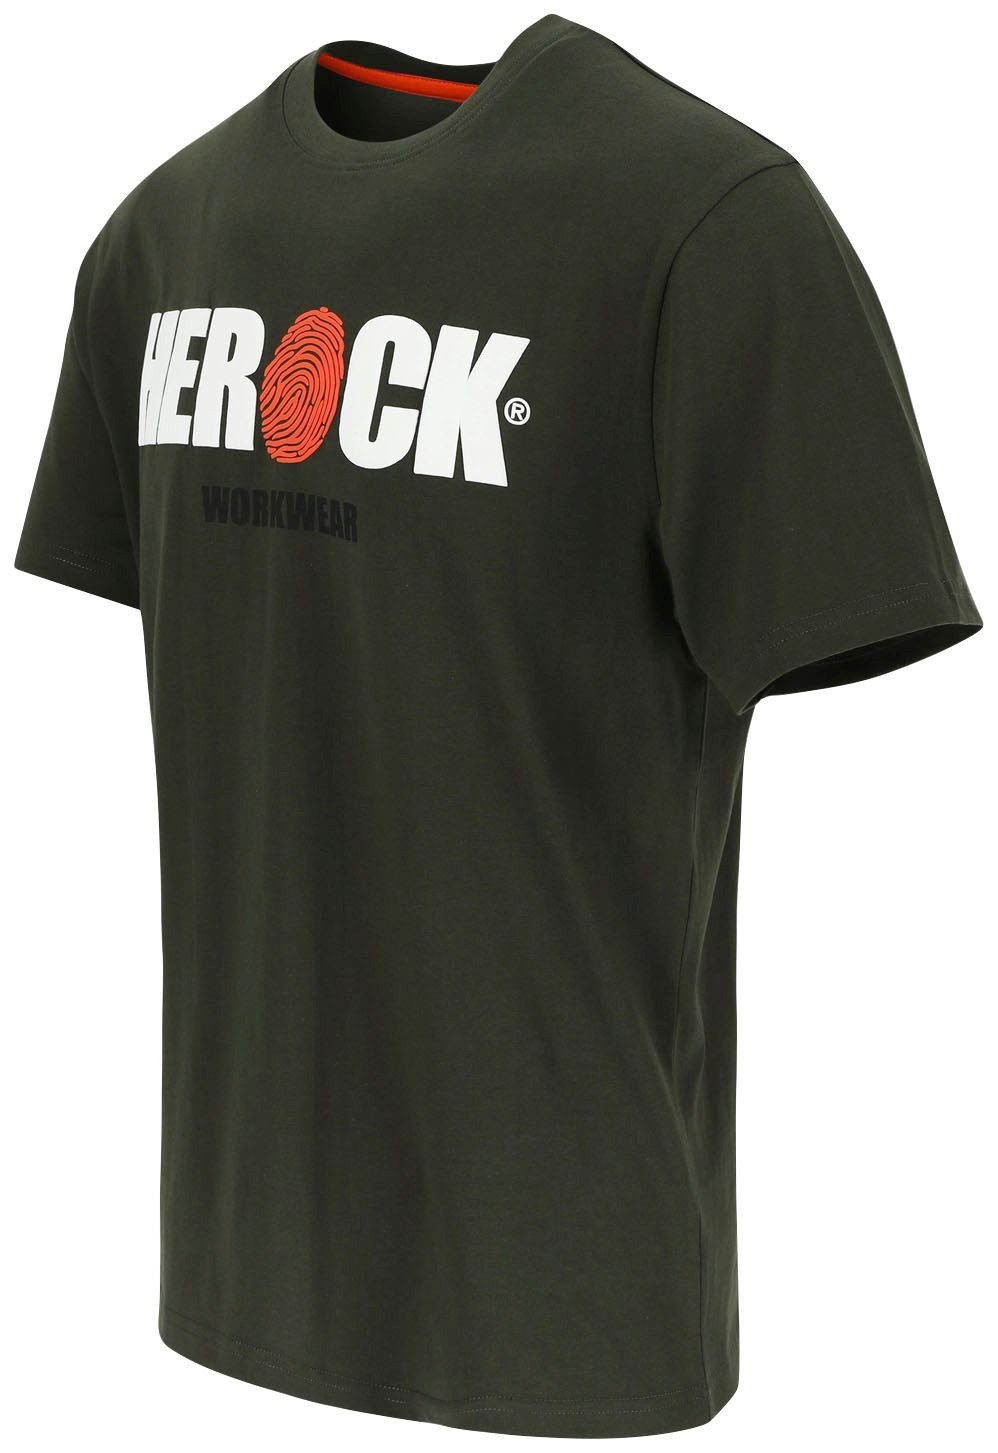 Rundhals, mit Baumwolle, ENI Herock Tragegefühl T-Shirt khaki angenehmes Herock®-Aufdruck,